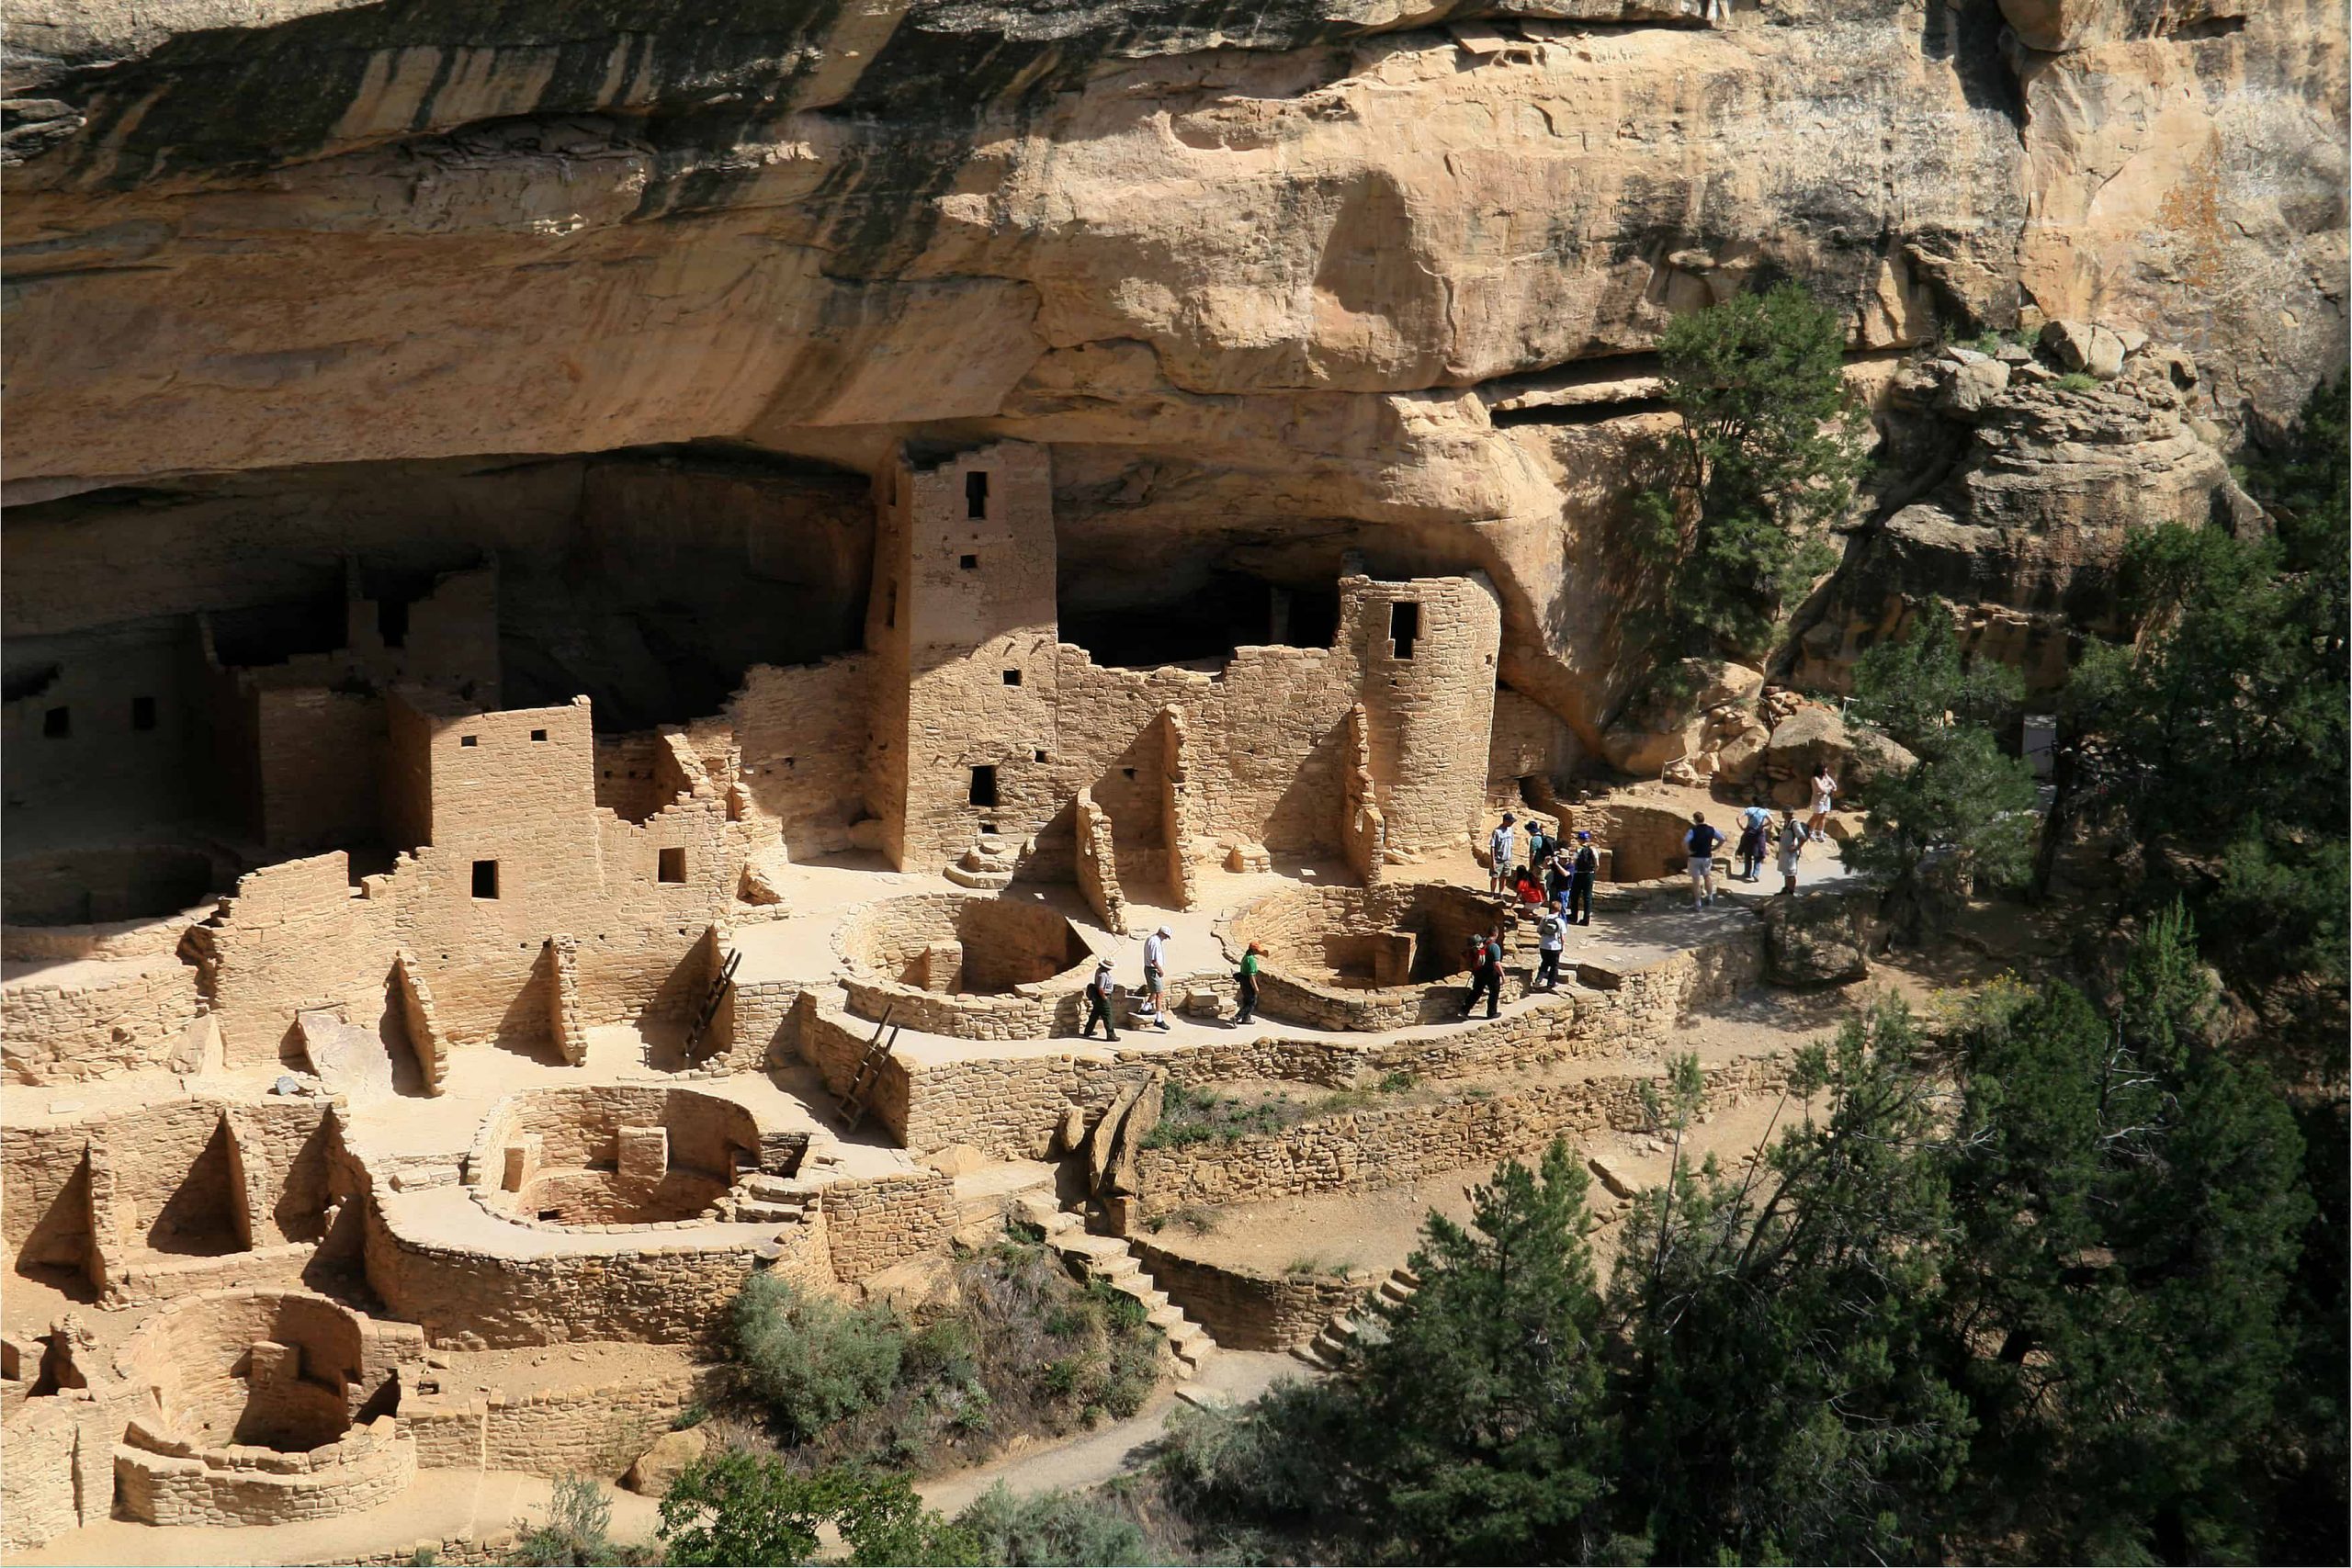 Anasazi dwellings